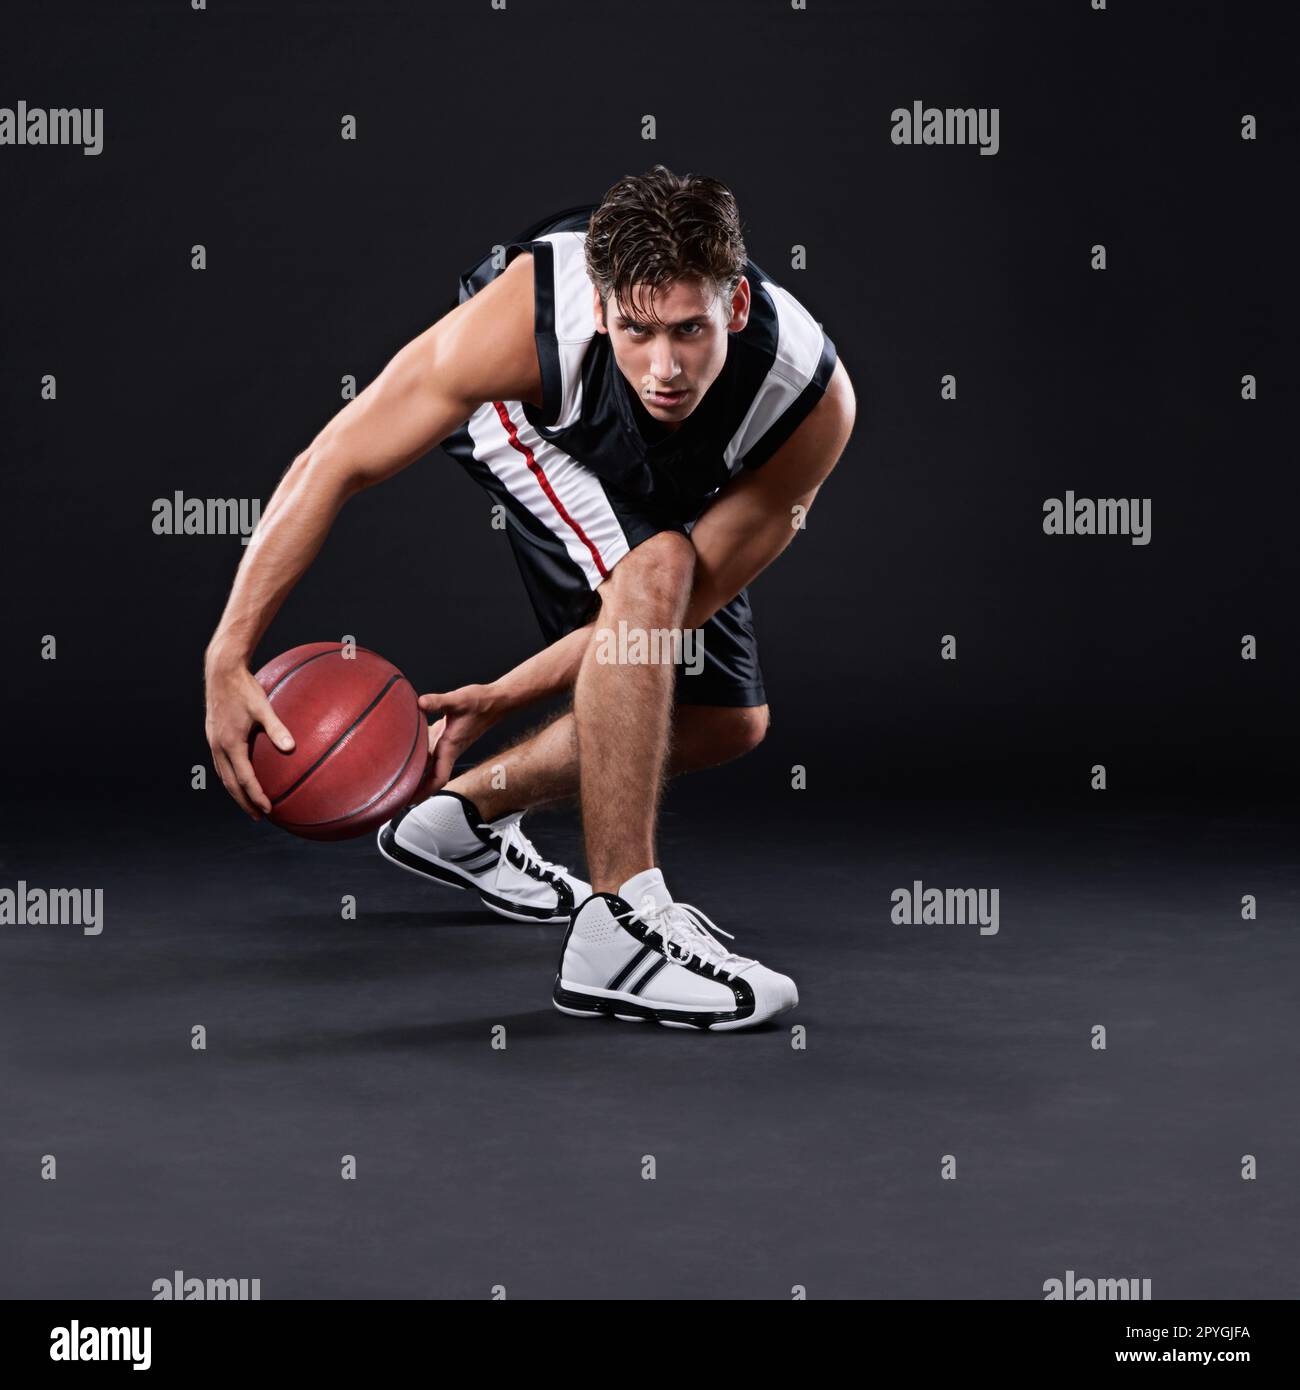 Non scappare via dalle sfide, scappare sopra di loro. Ritratto completo di un giocatore di basket maschile in azione su sfondo nero. Foto Stock